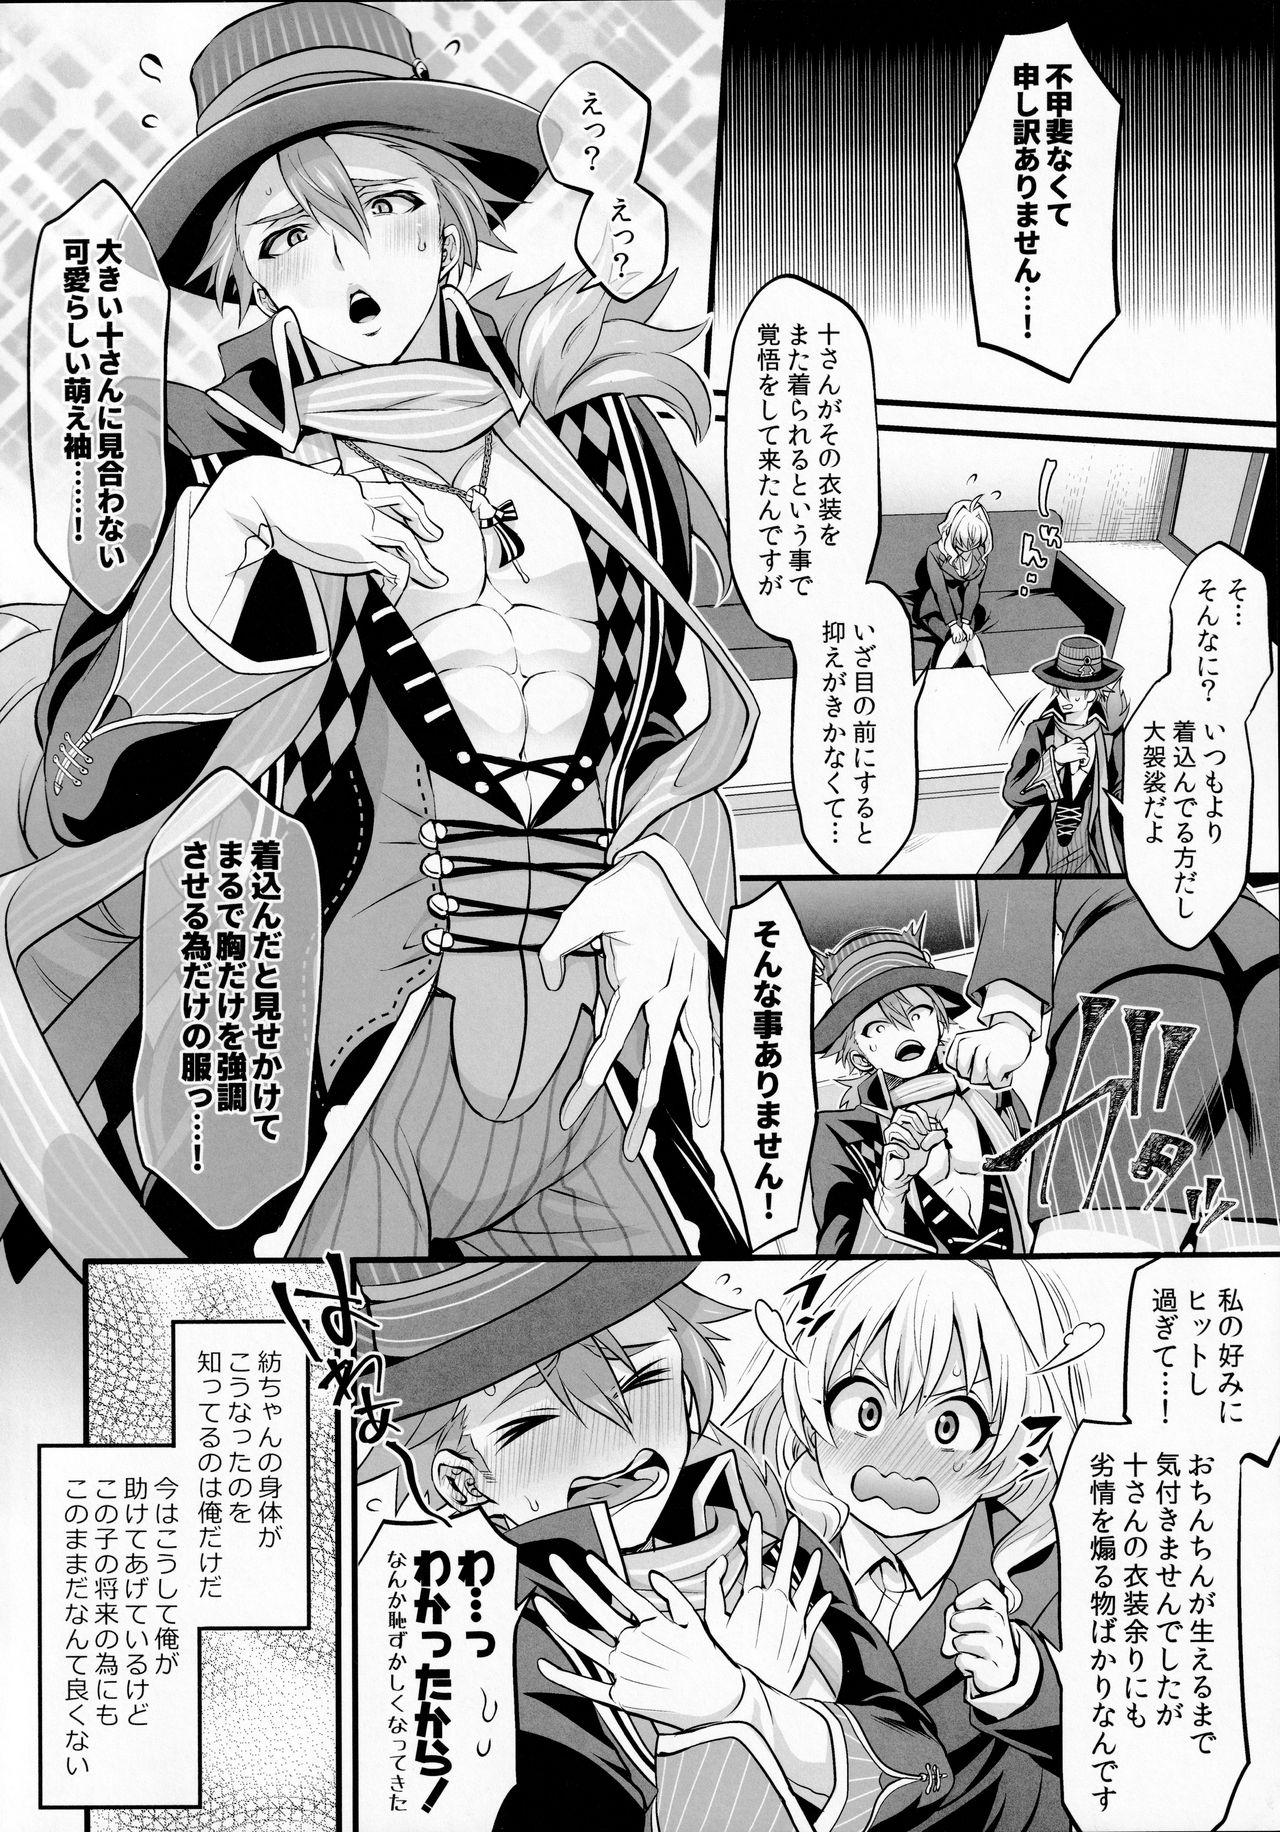 Self Watashi no Ochinchin ga Amaeta Gatterun desu! - Idolish7 Safado - Page 4